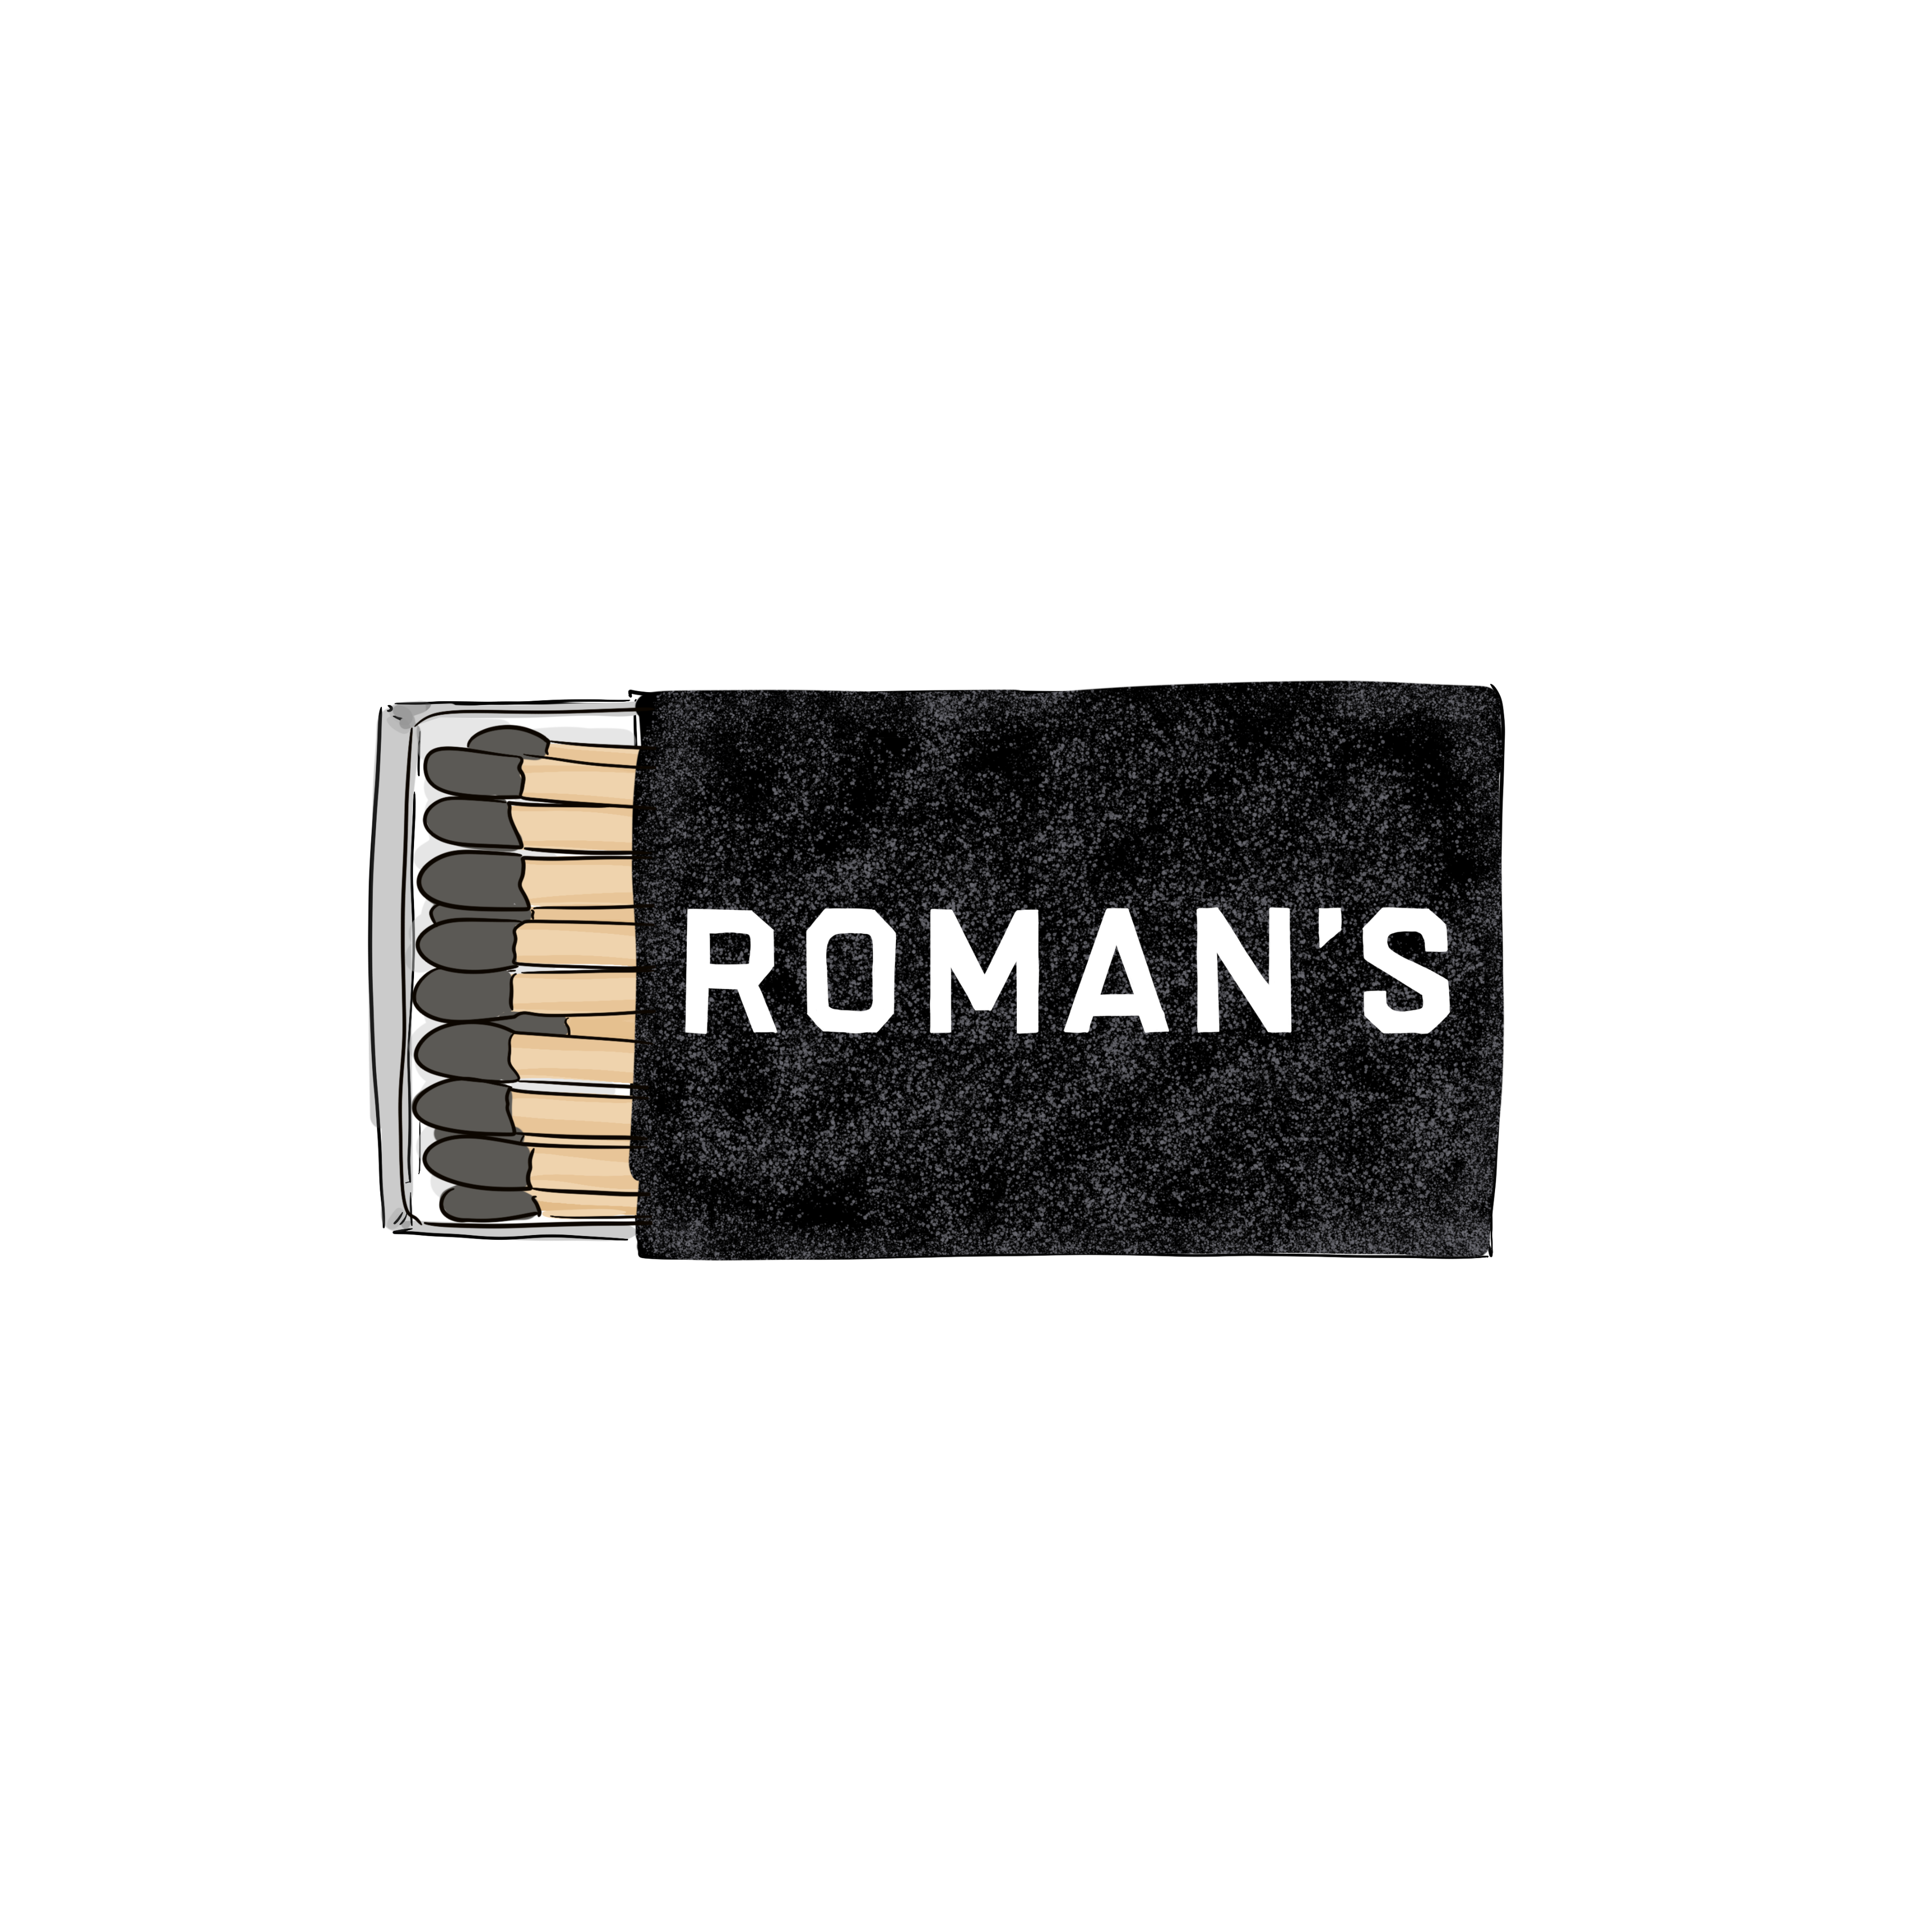 Roman's Matchbook